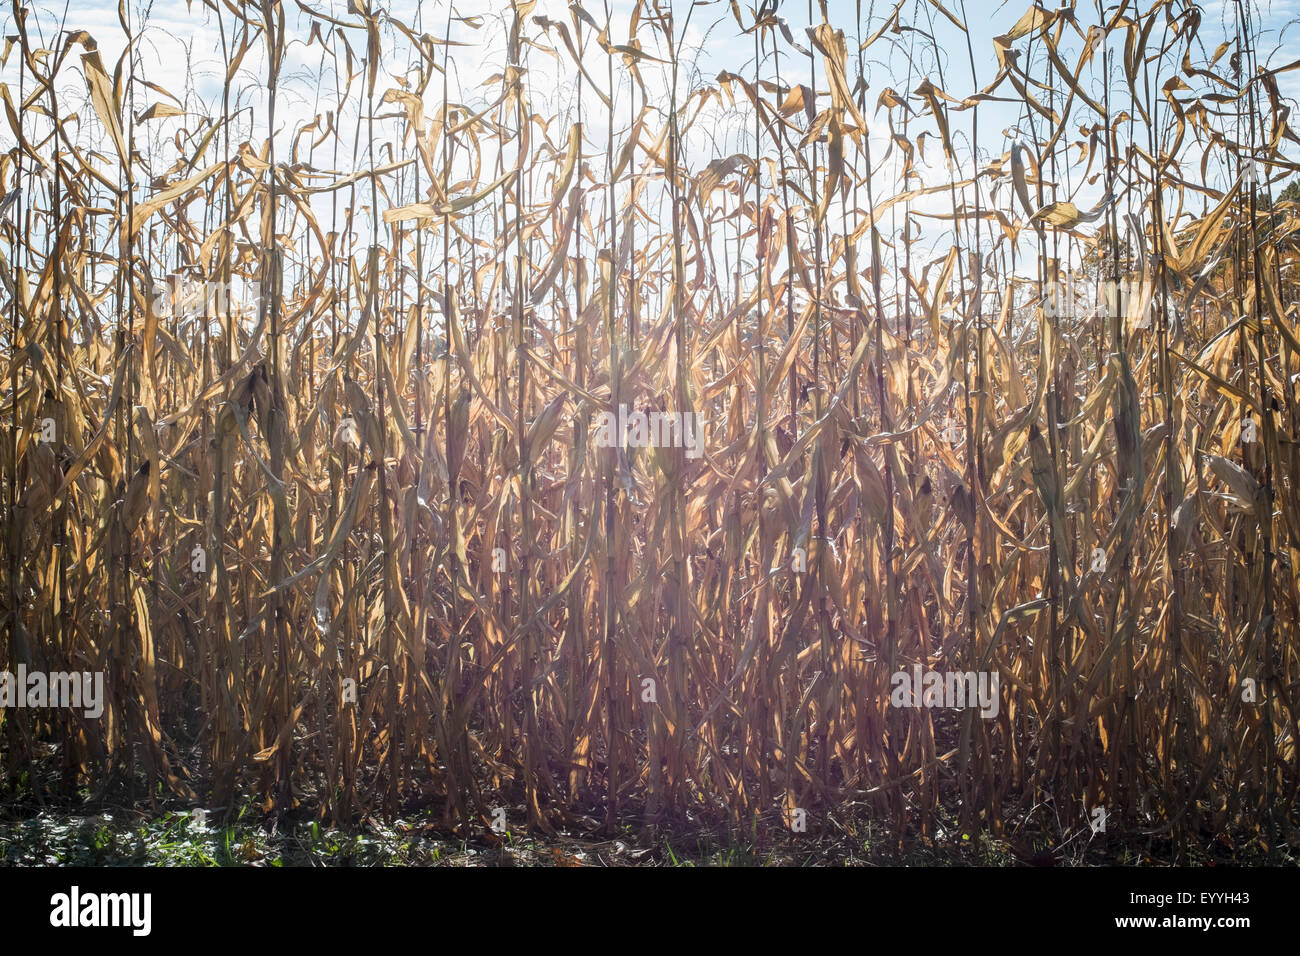 Corn crops growing in farm field Stock Photo